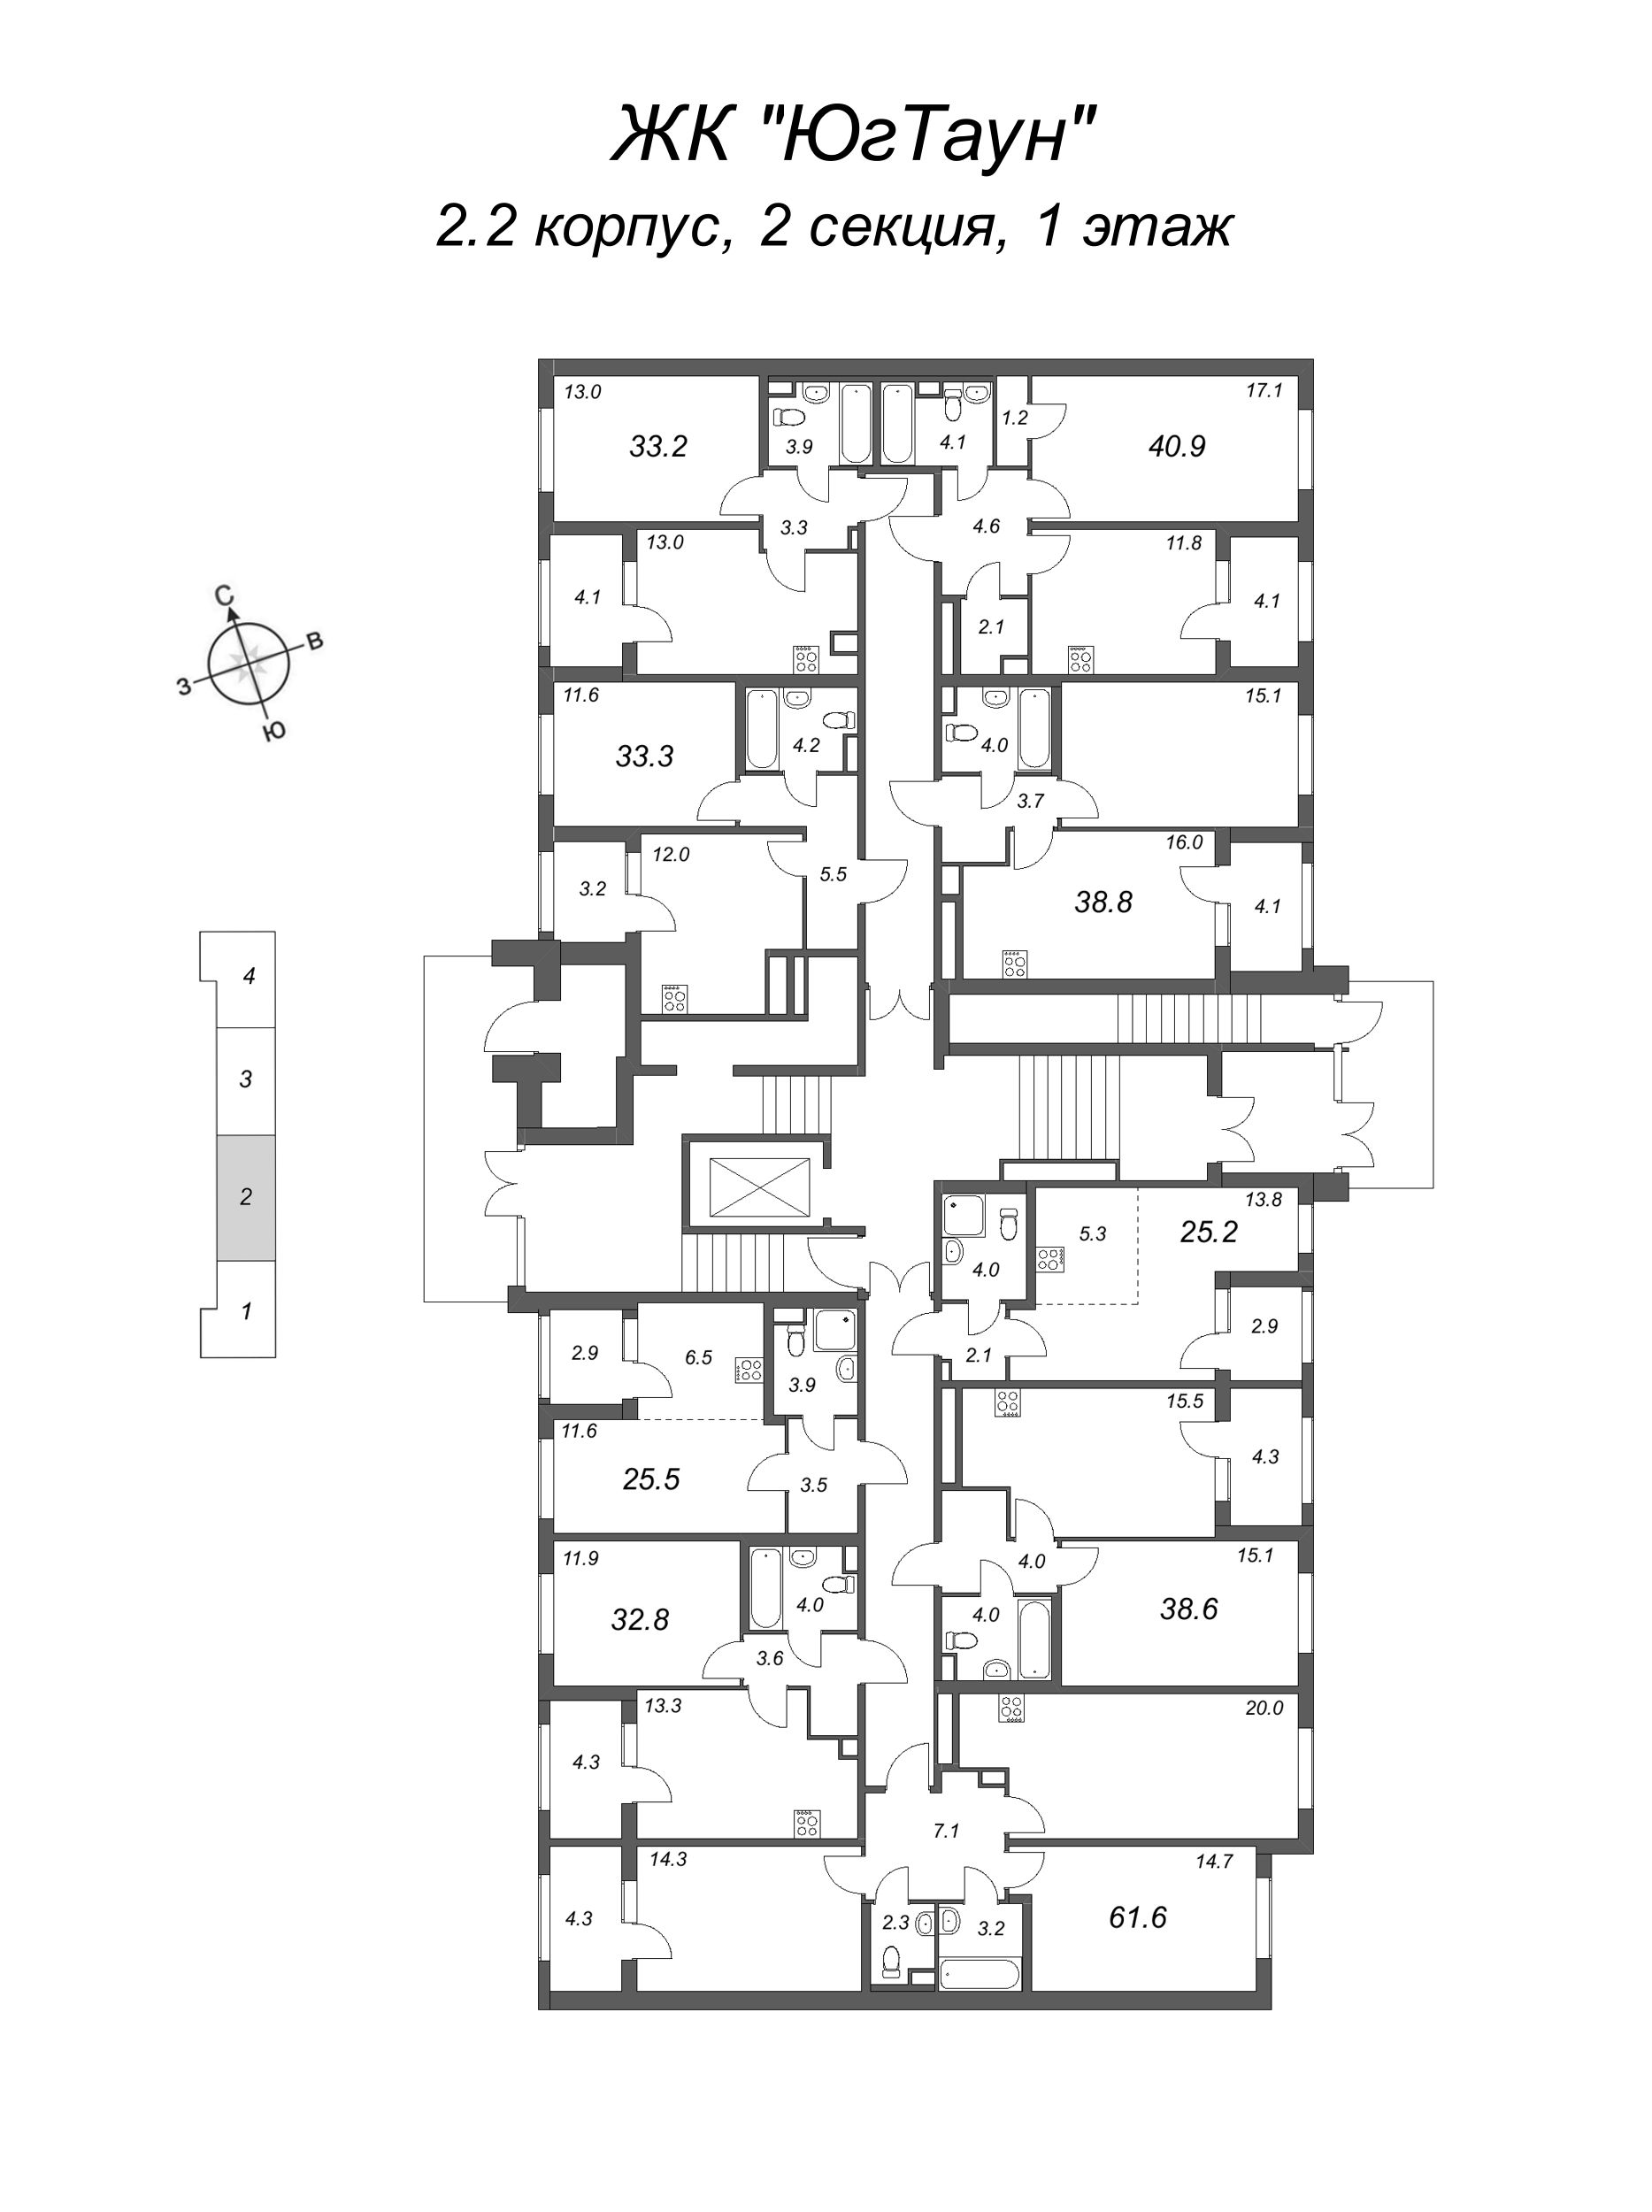 1-комнатная квартира, 33.3 м² в ЖК "ЮгТаун" - планировка этажа